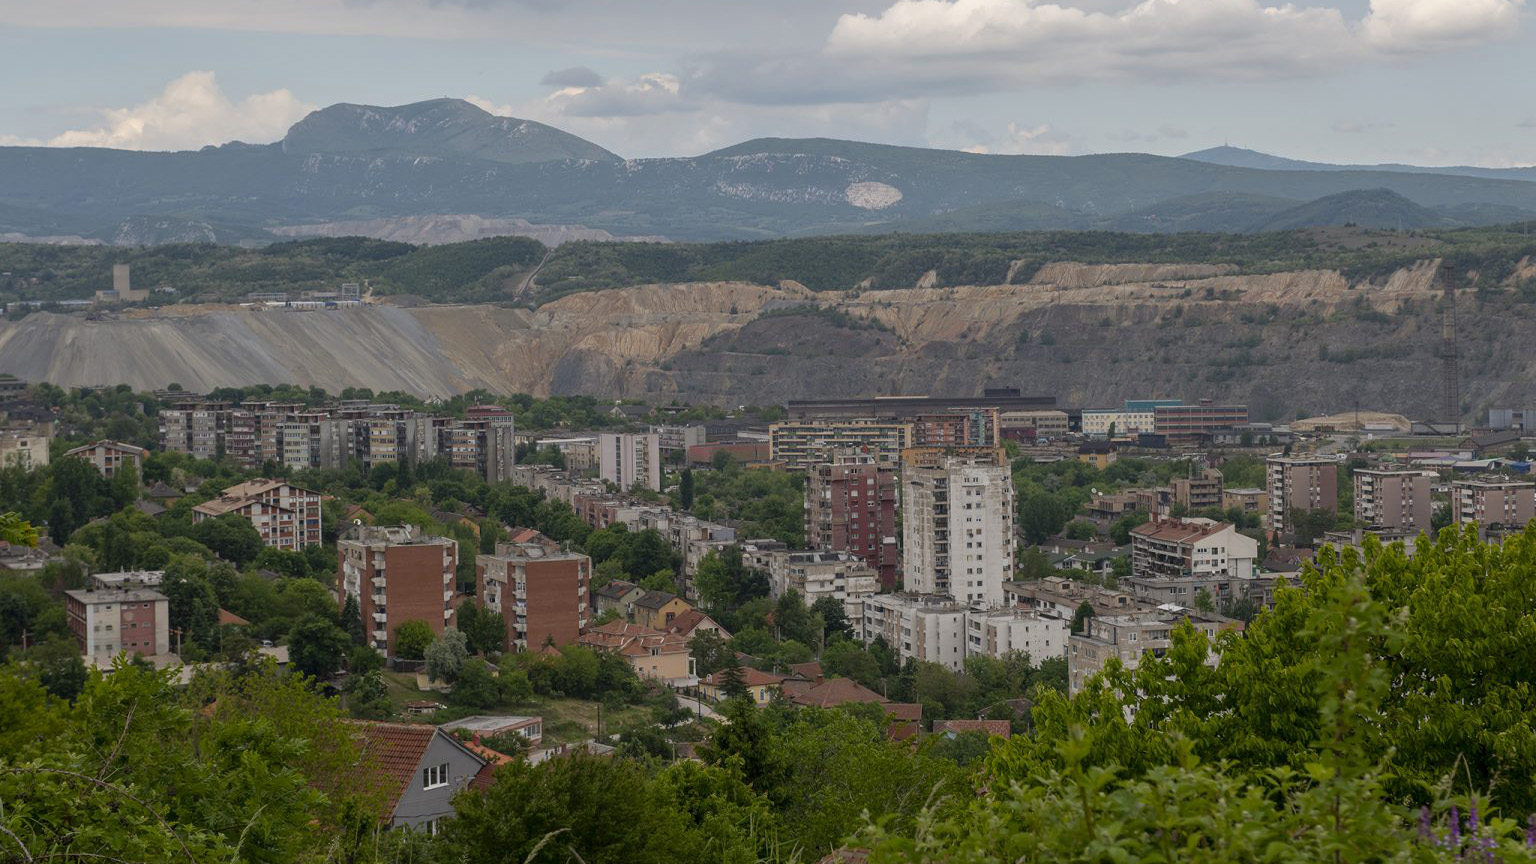 Pogled na grad Bor u Srbiji. Foto: Nemanja Pančić/Just Finance International